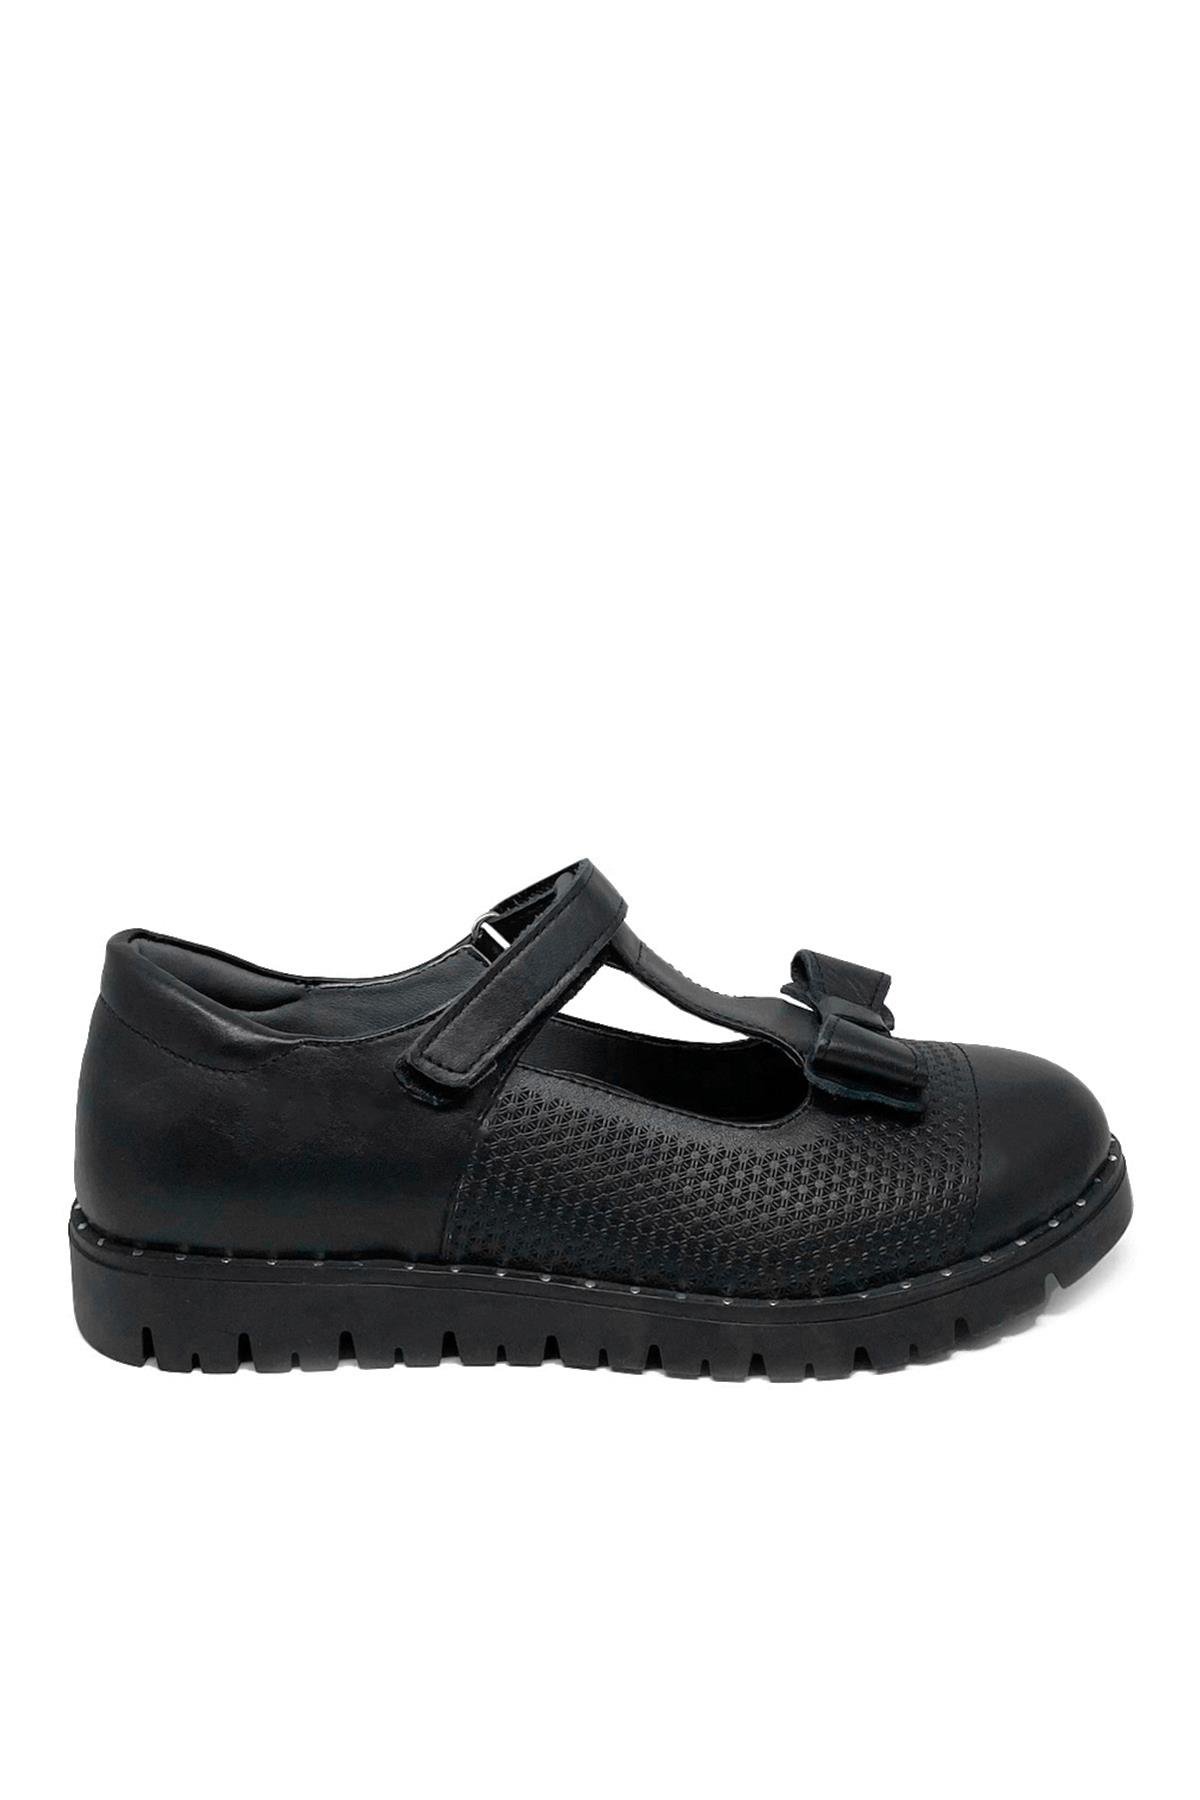 Siyah Deri Kız Çocuk Ayakkabı